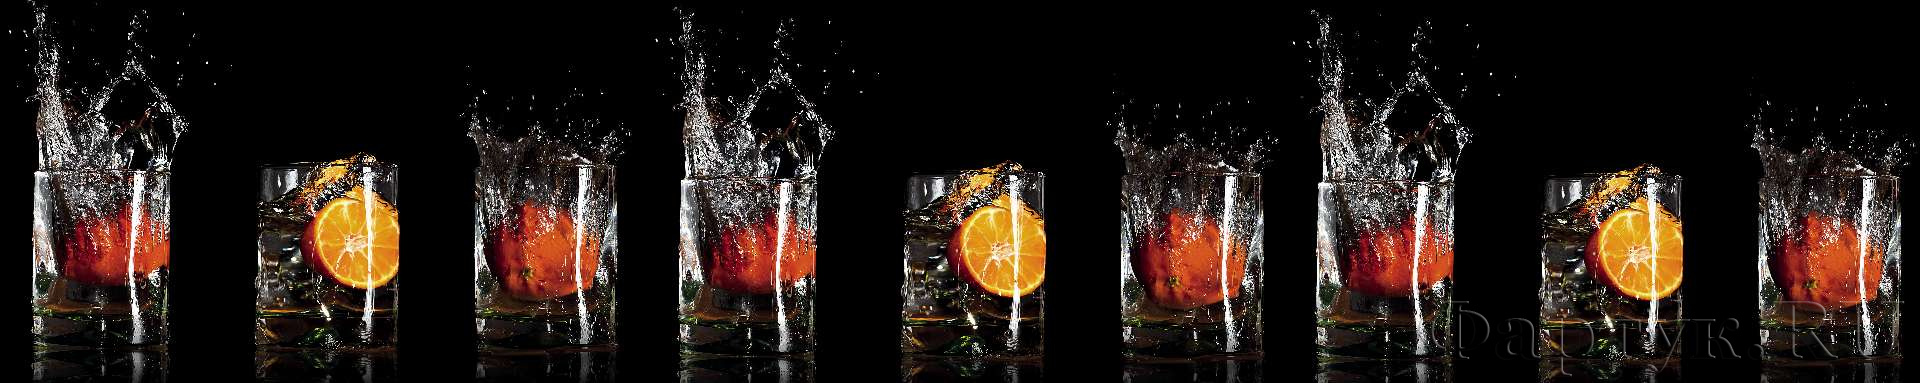 Апельсины в стаканах с водой